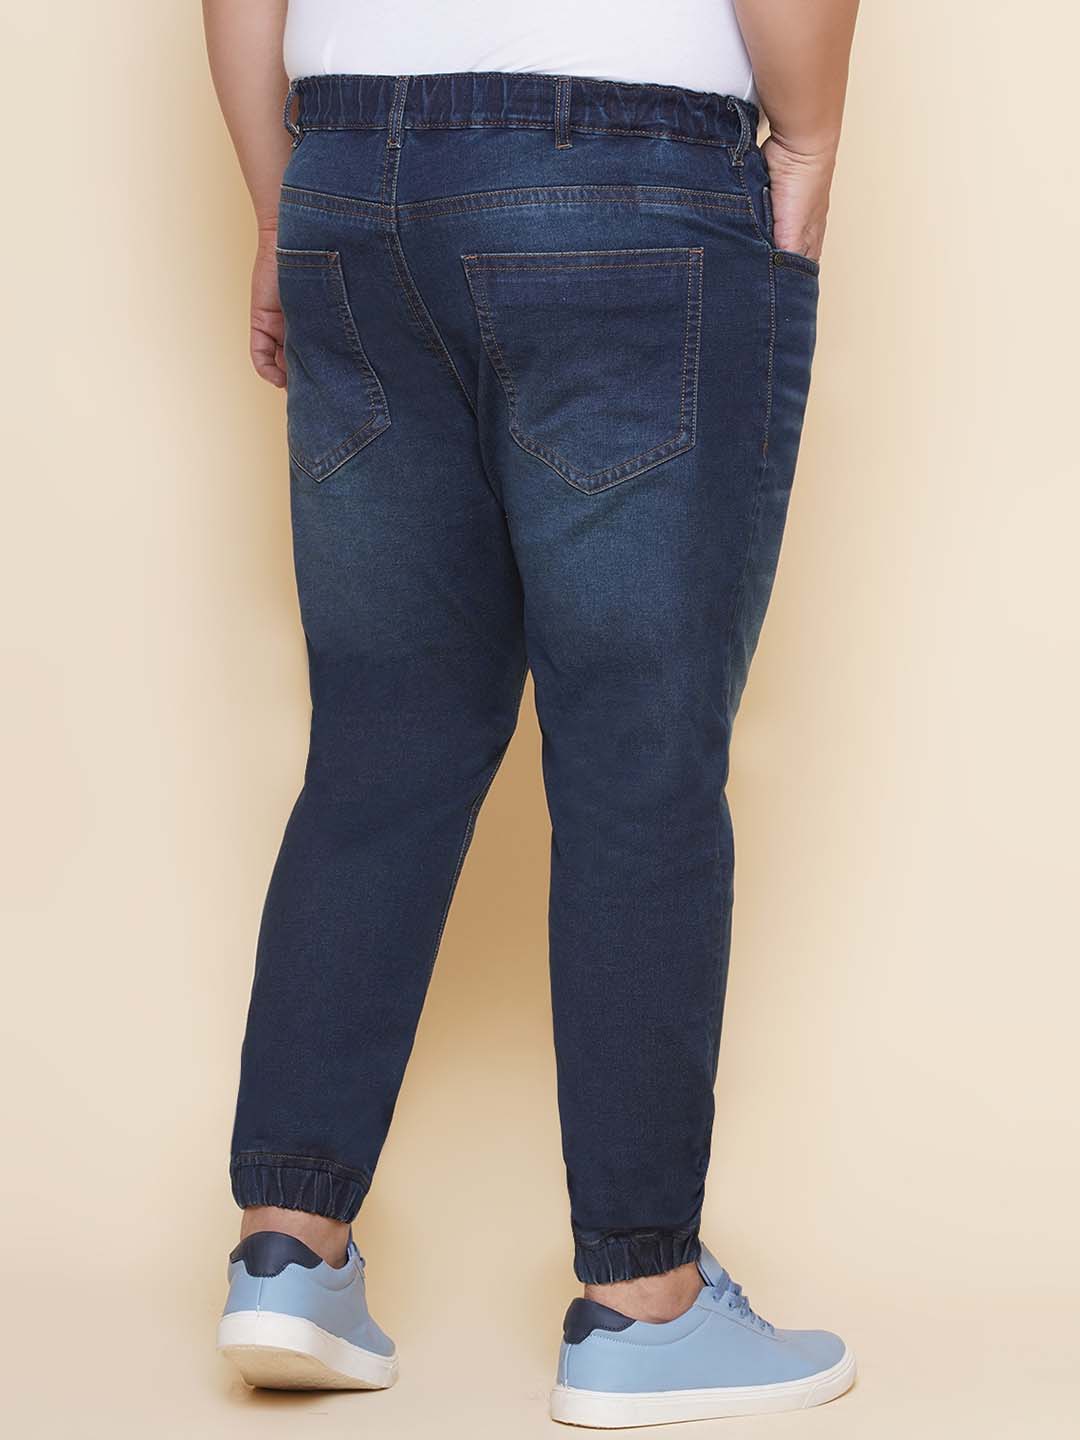 bottomwear/jeans/JPJ27102/jpj27102-5.jpg